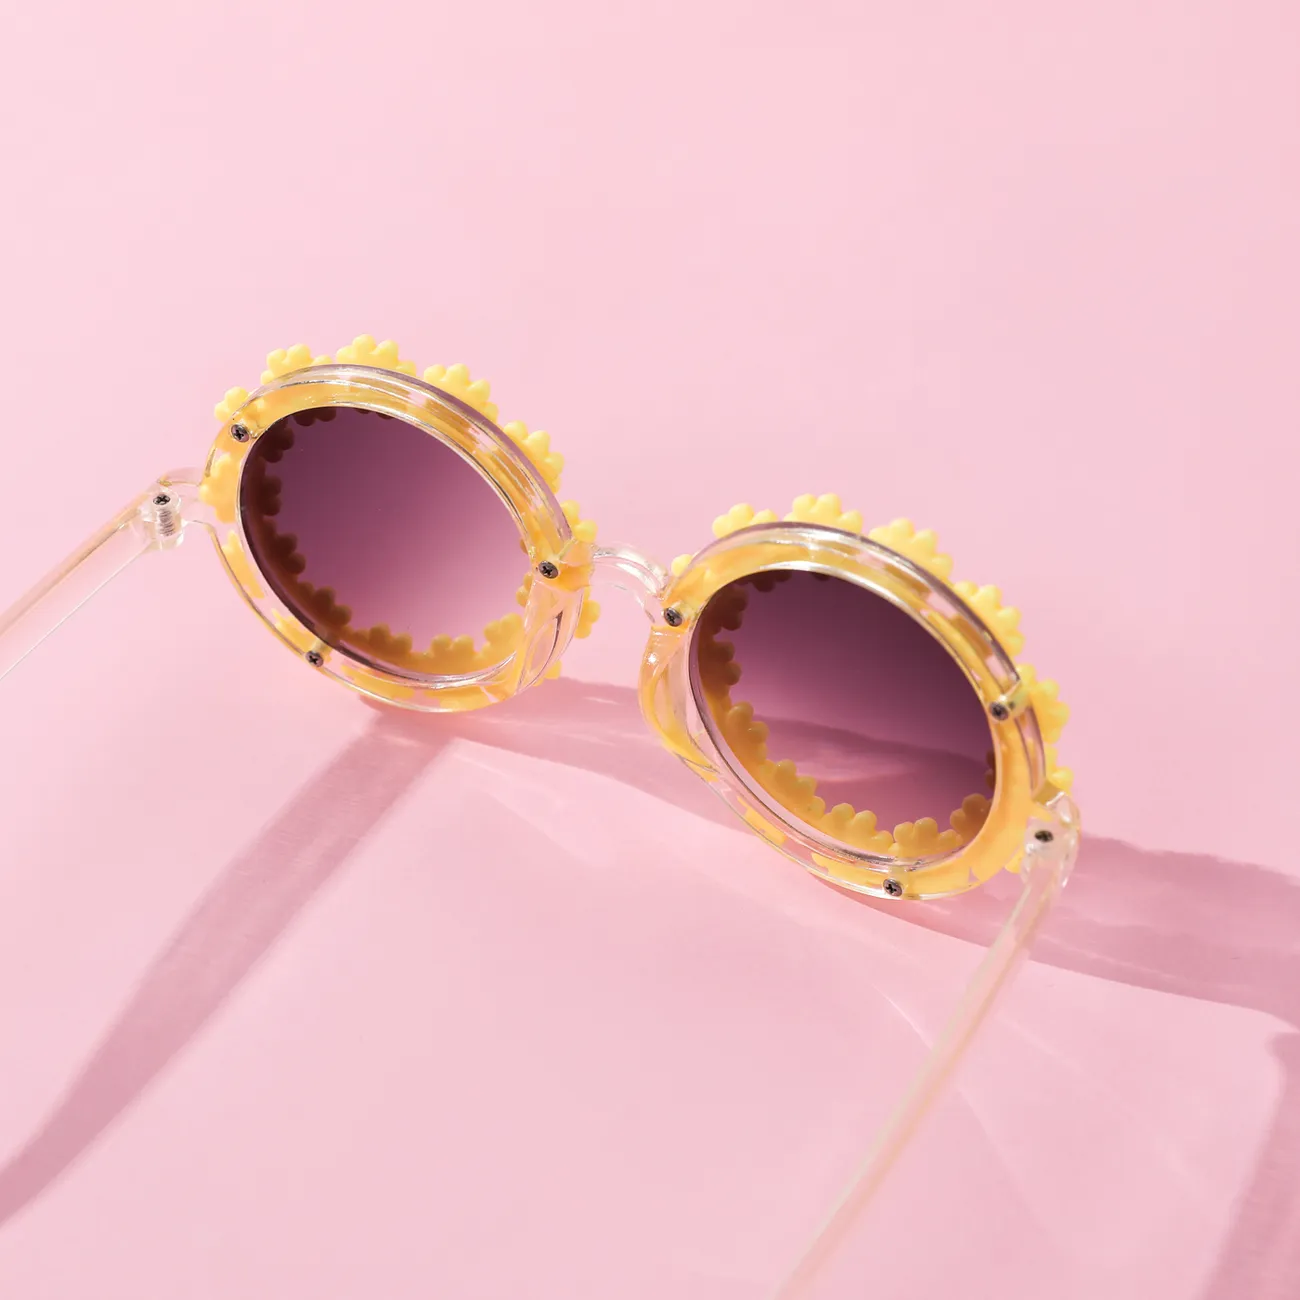 Kleinkind- / Kinderbrille Gänseblümchen runder Rahmen Blumenform dekorative Brille gelb big image 1